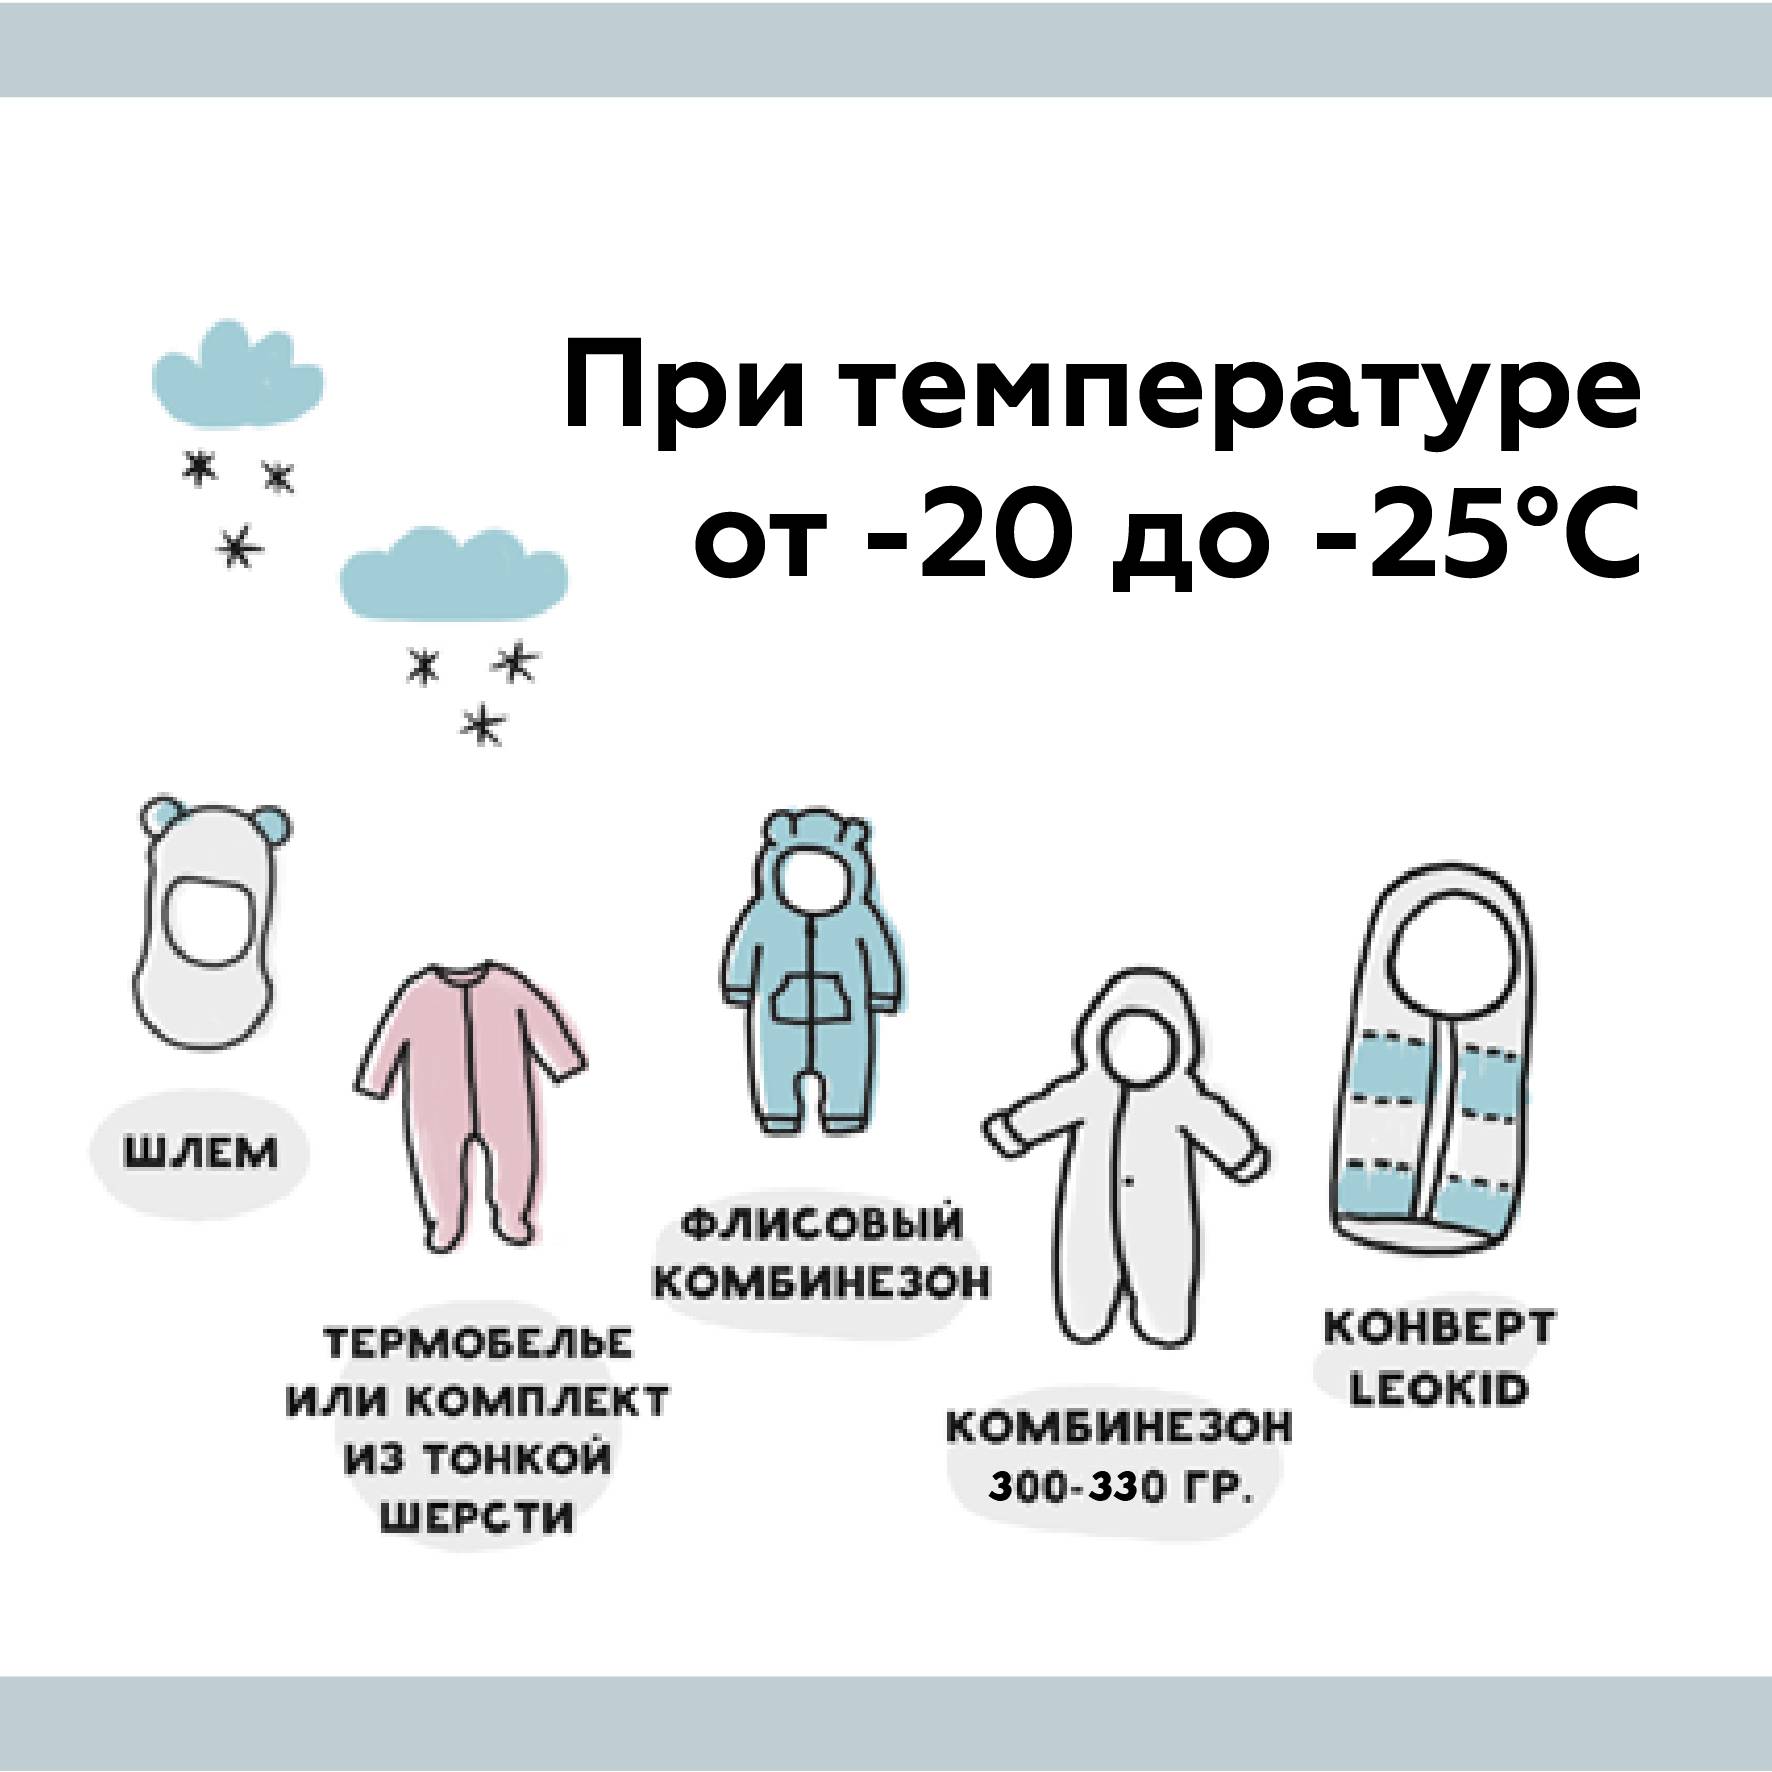 Как одевать ребенка зимой: как правильно, быстро и просто подготовить ребенка к прогулке